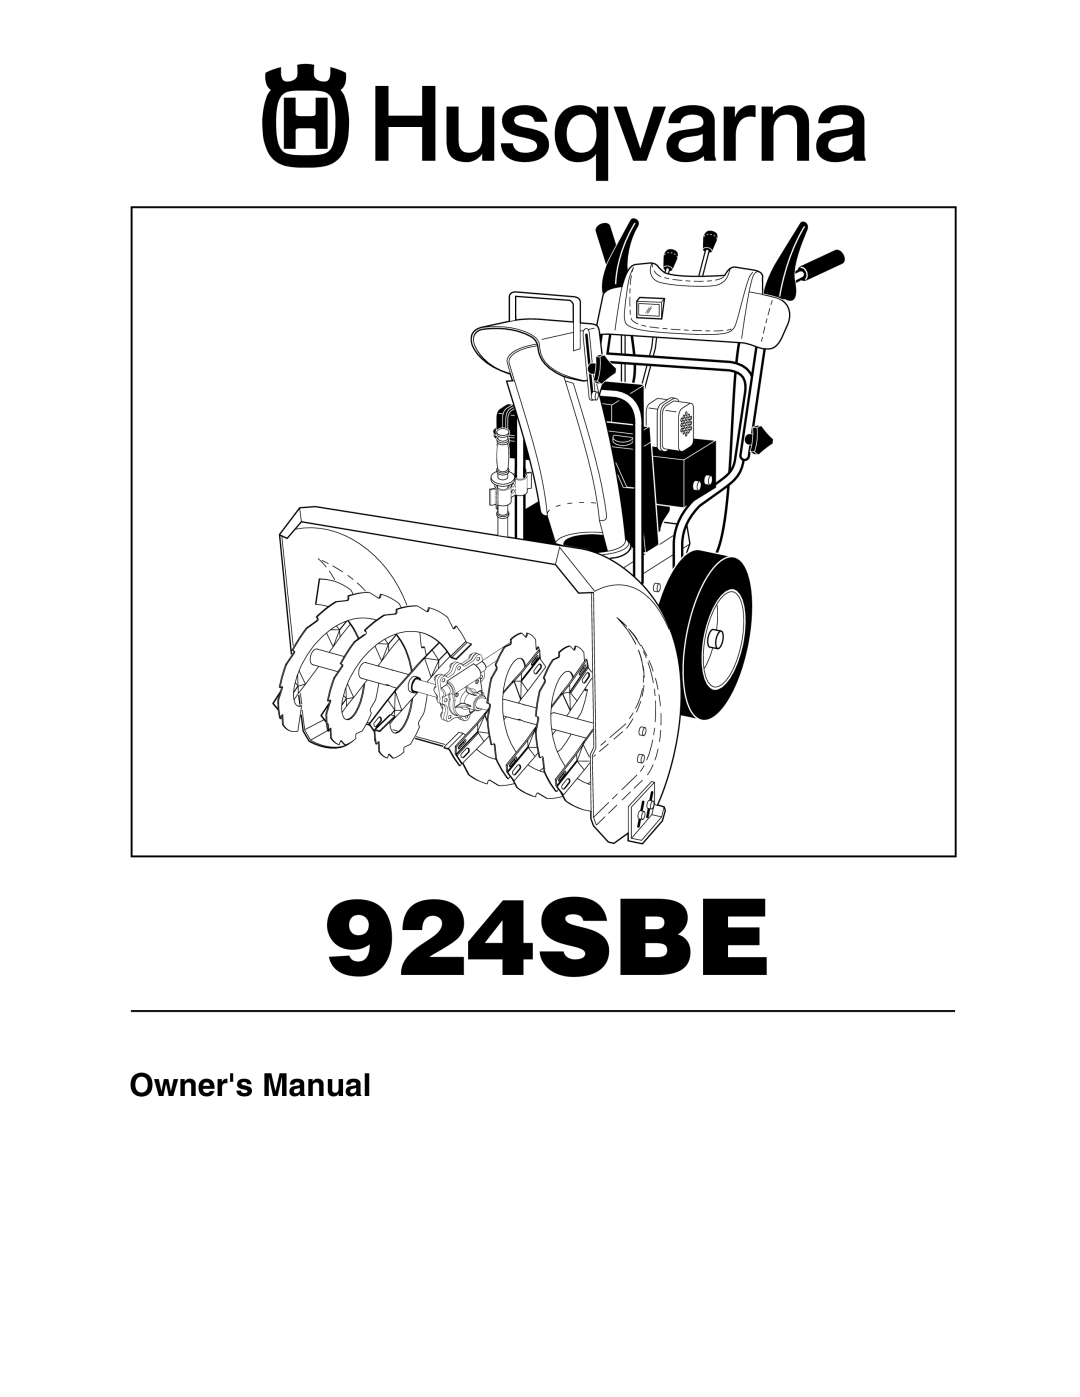 Husqvarna 924SBE owner manual 